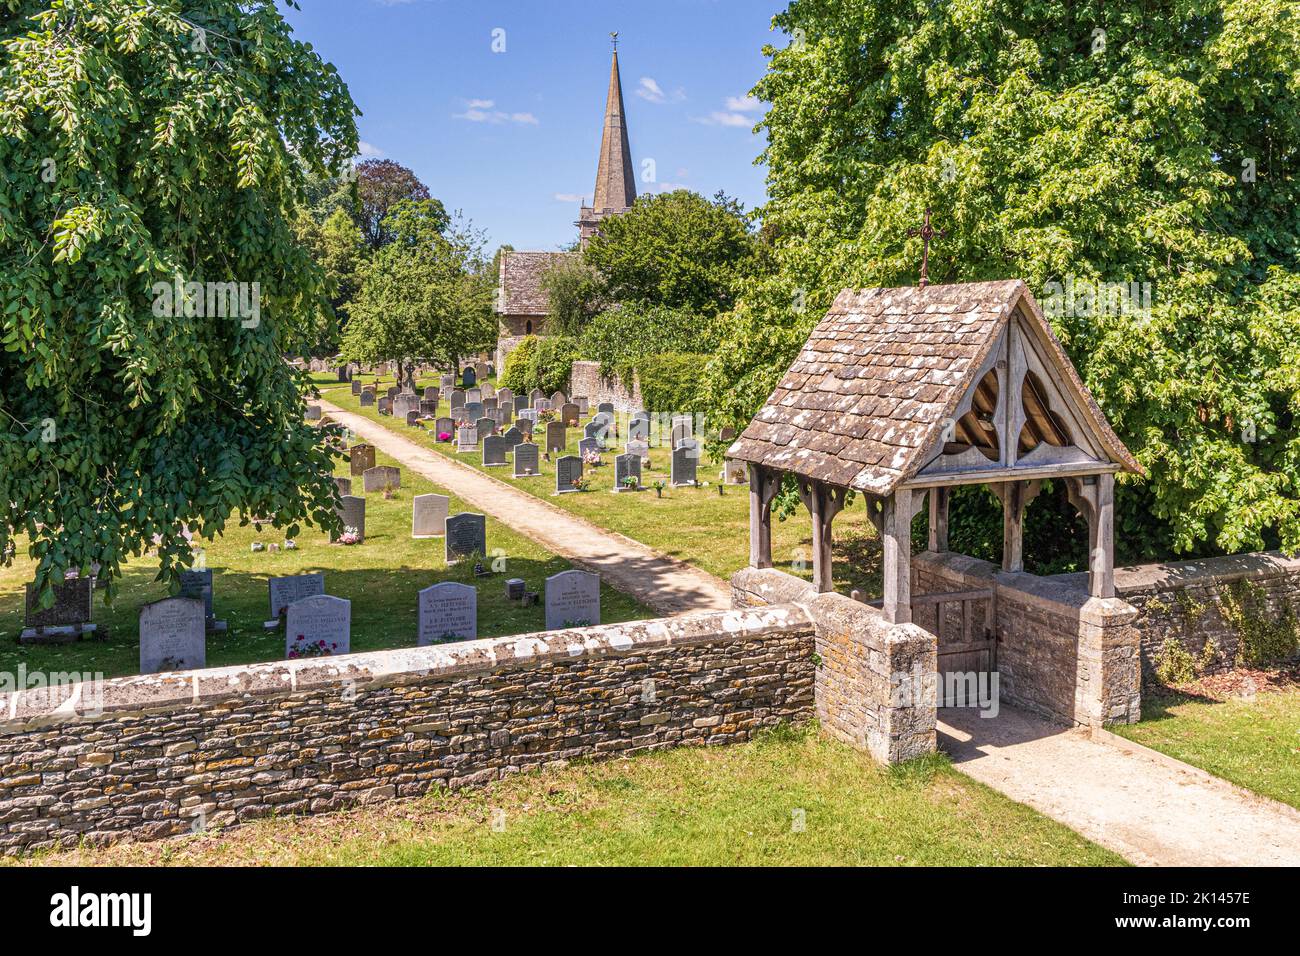 All Saints en el pueblo Cotswold de Down Ampney, Gloucestershire, Reino Unido. Ralph Vaughan Williams nació en el antiguo Vicarage en 1872 Foto de stock